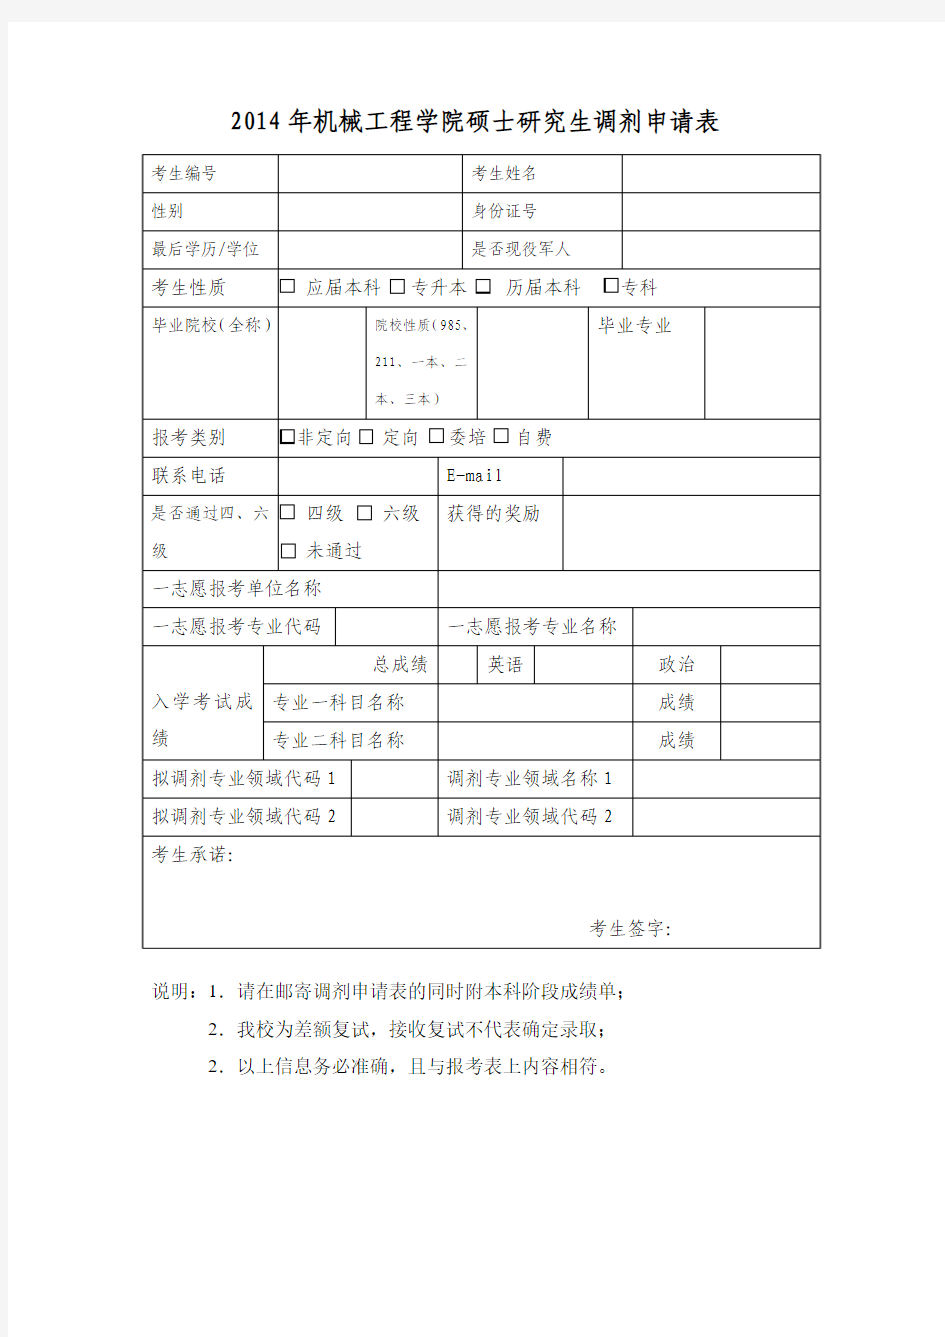 广西大学机械工程学院2014年调剂申请表.